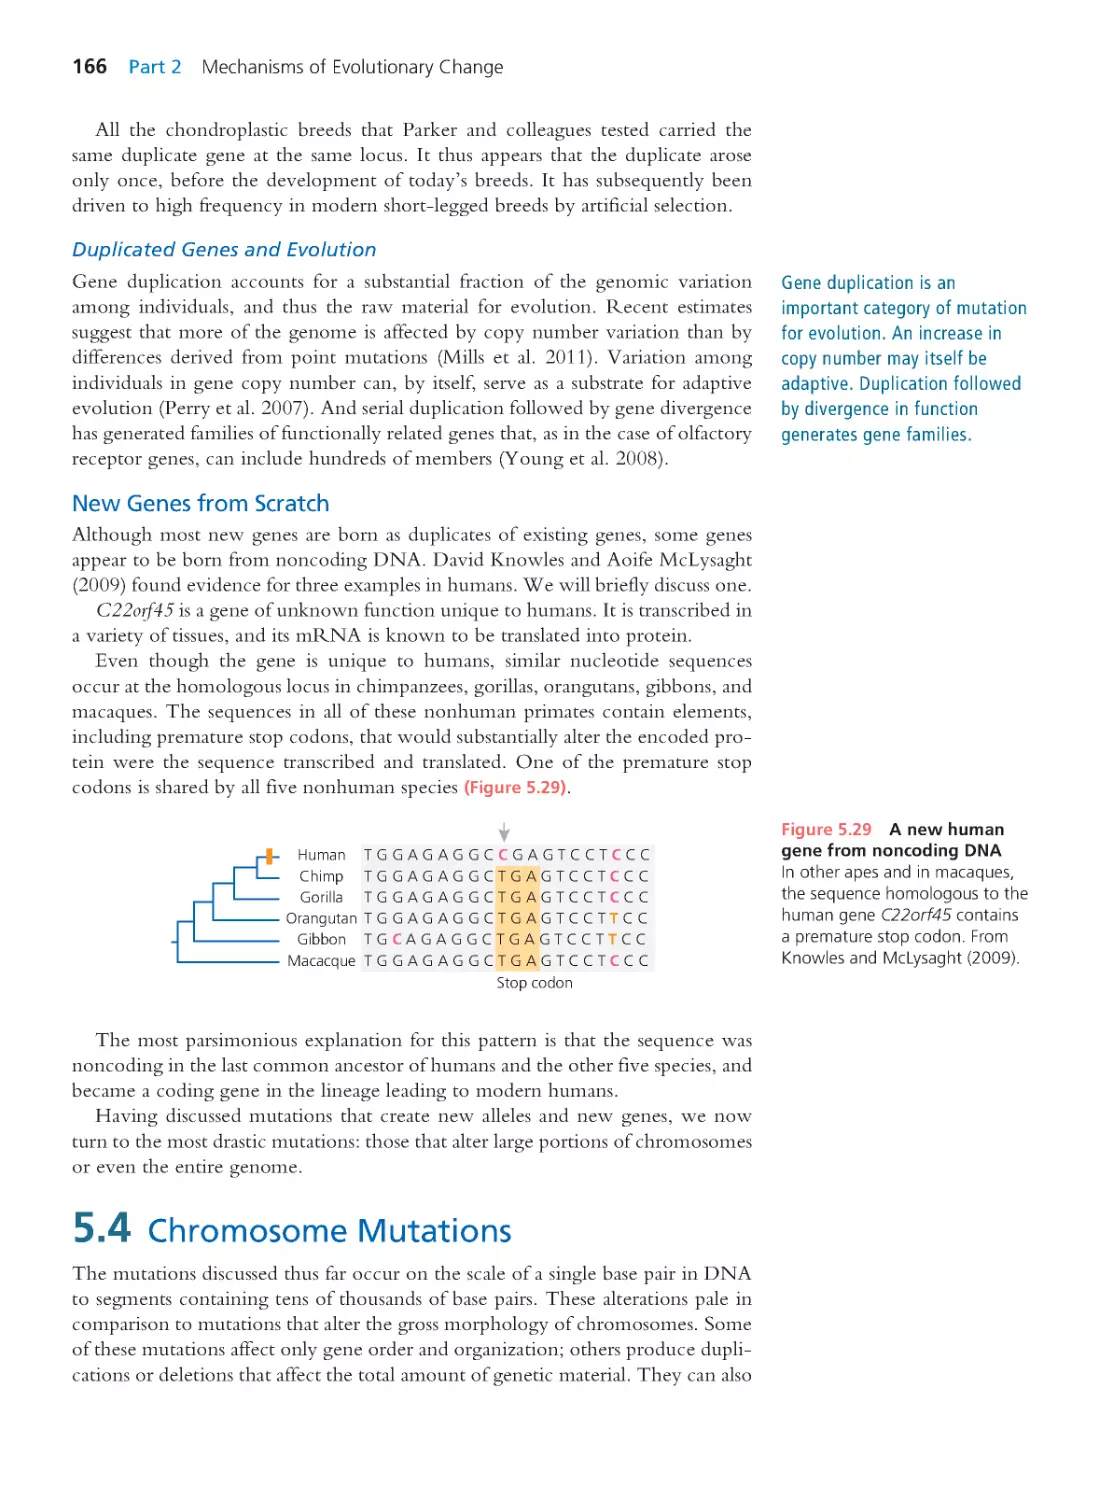 5.4 Chromosome Mutations